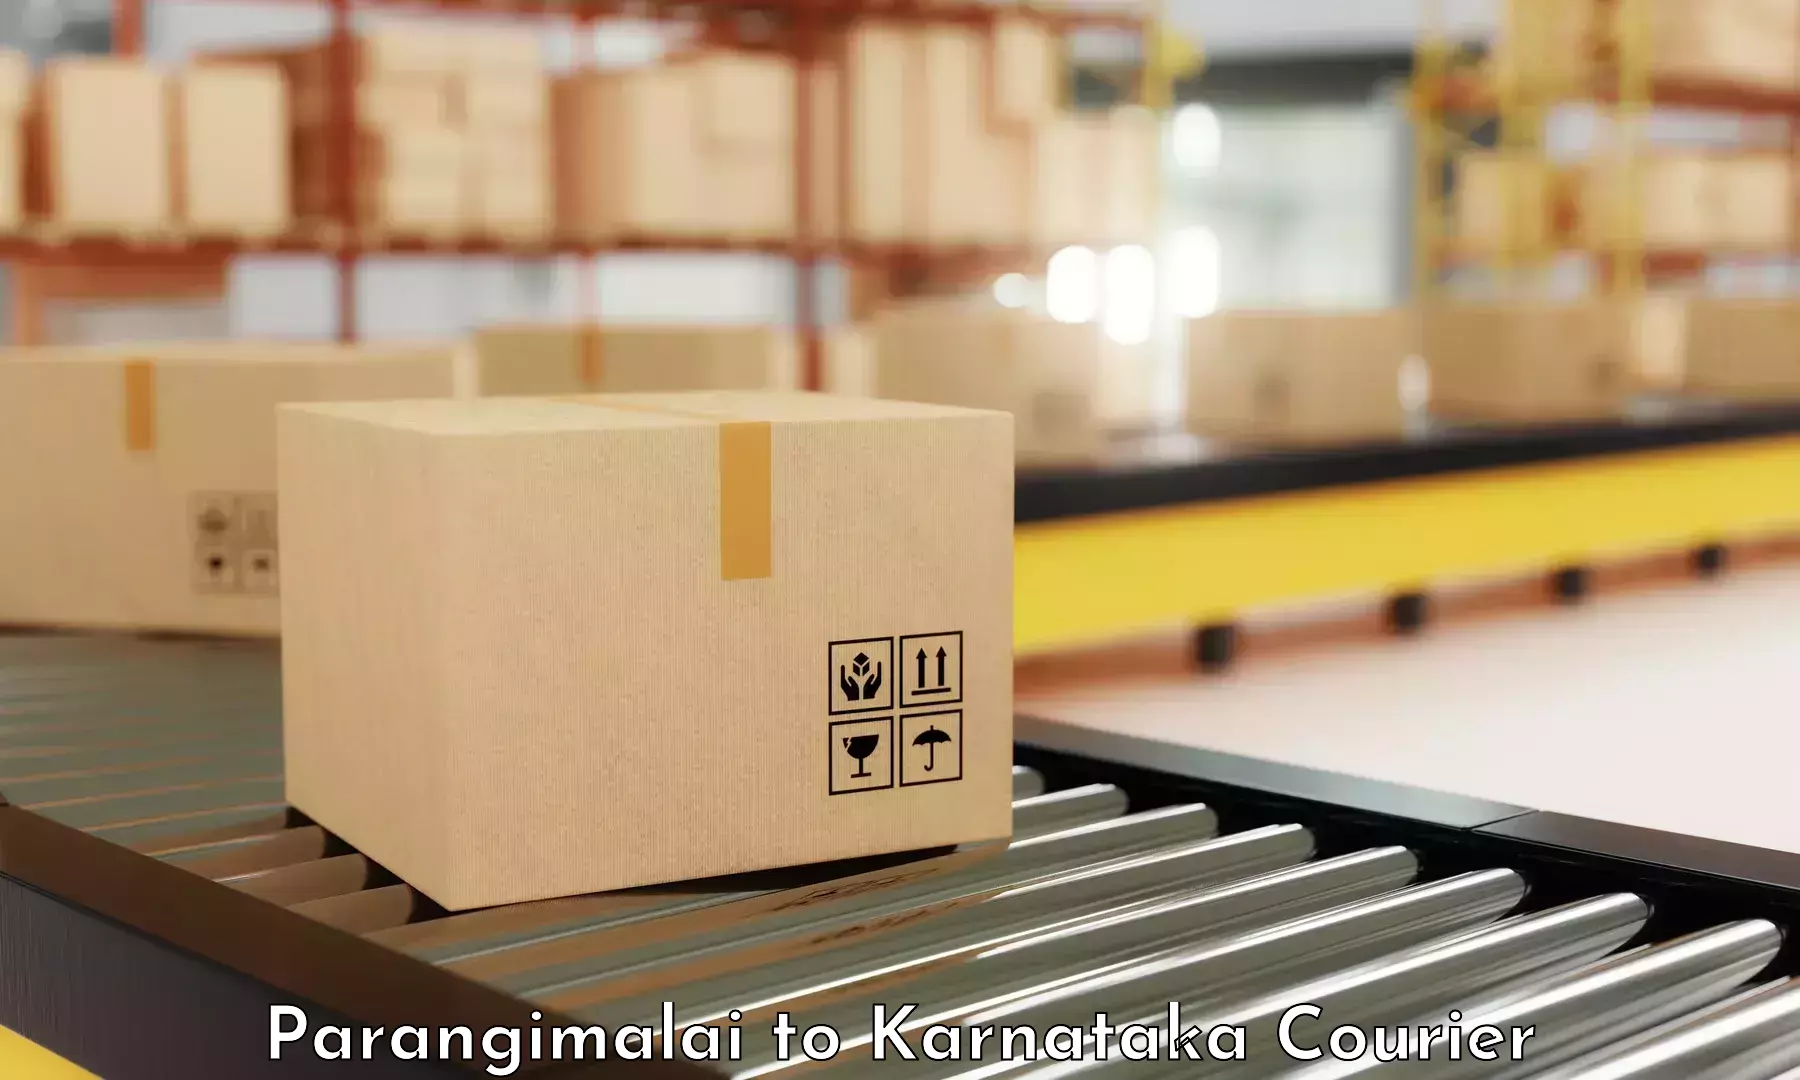 Efficient parcel delivery Parangimalai to Aland Kalaburagi